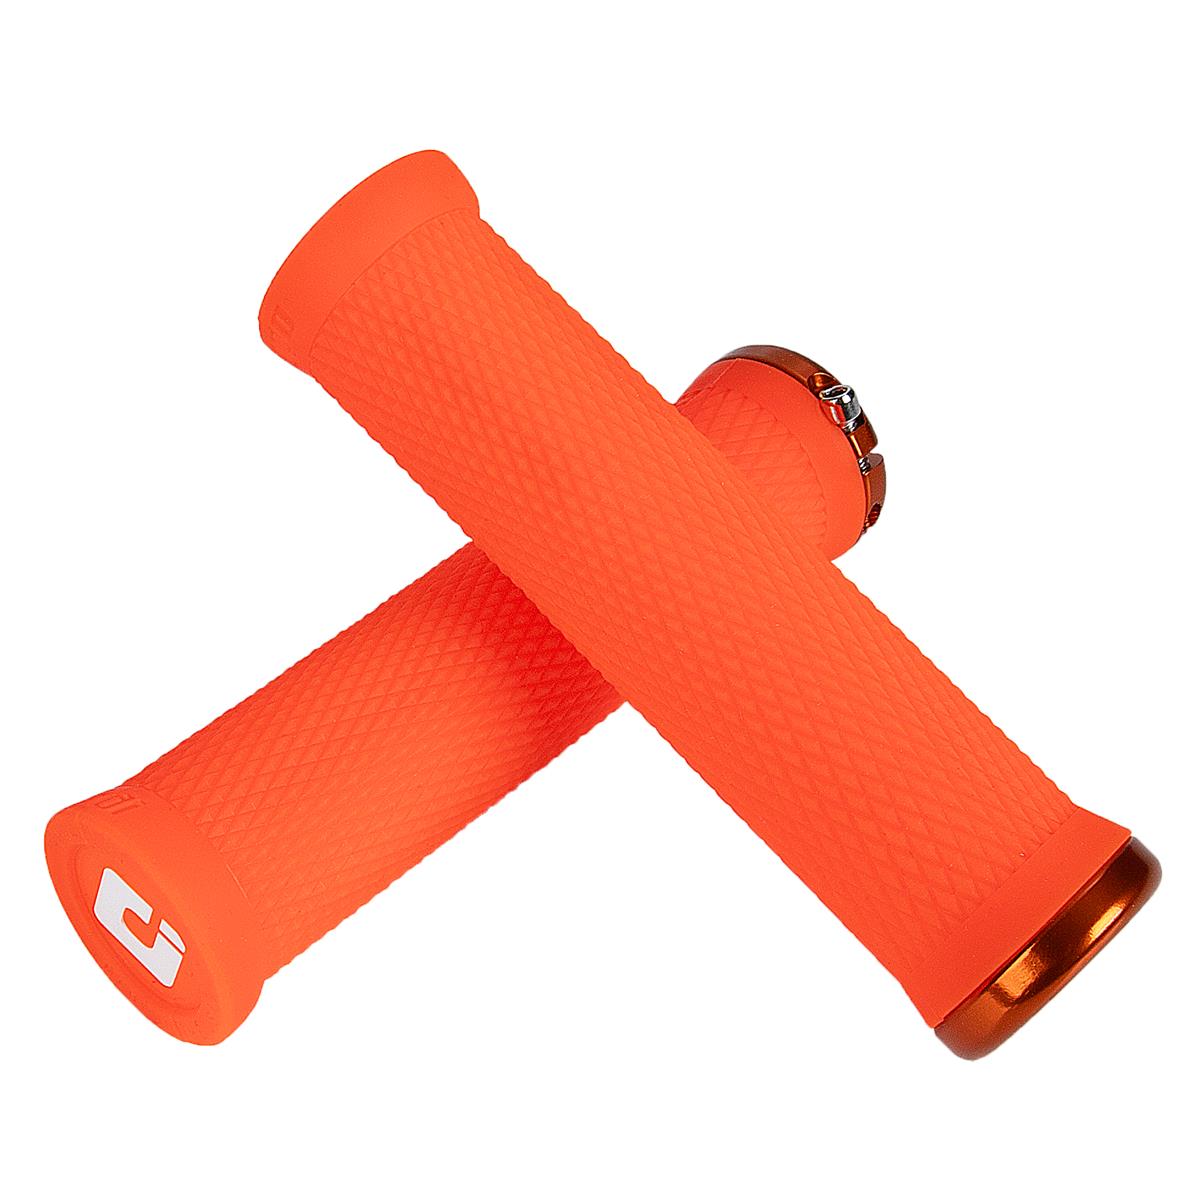 ODI Grips VTT Elite Motion Lock-On Neon Orange - 130 mm